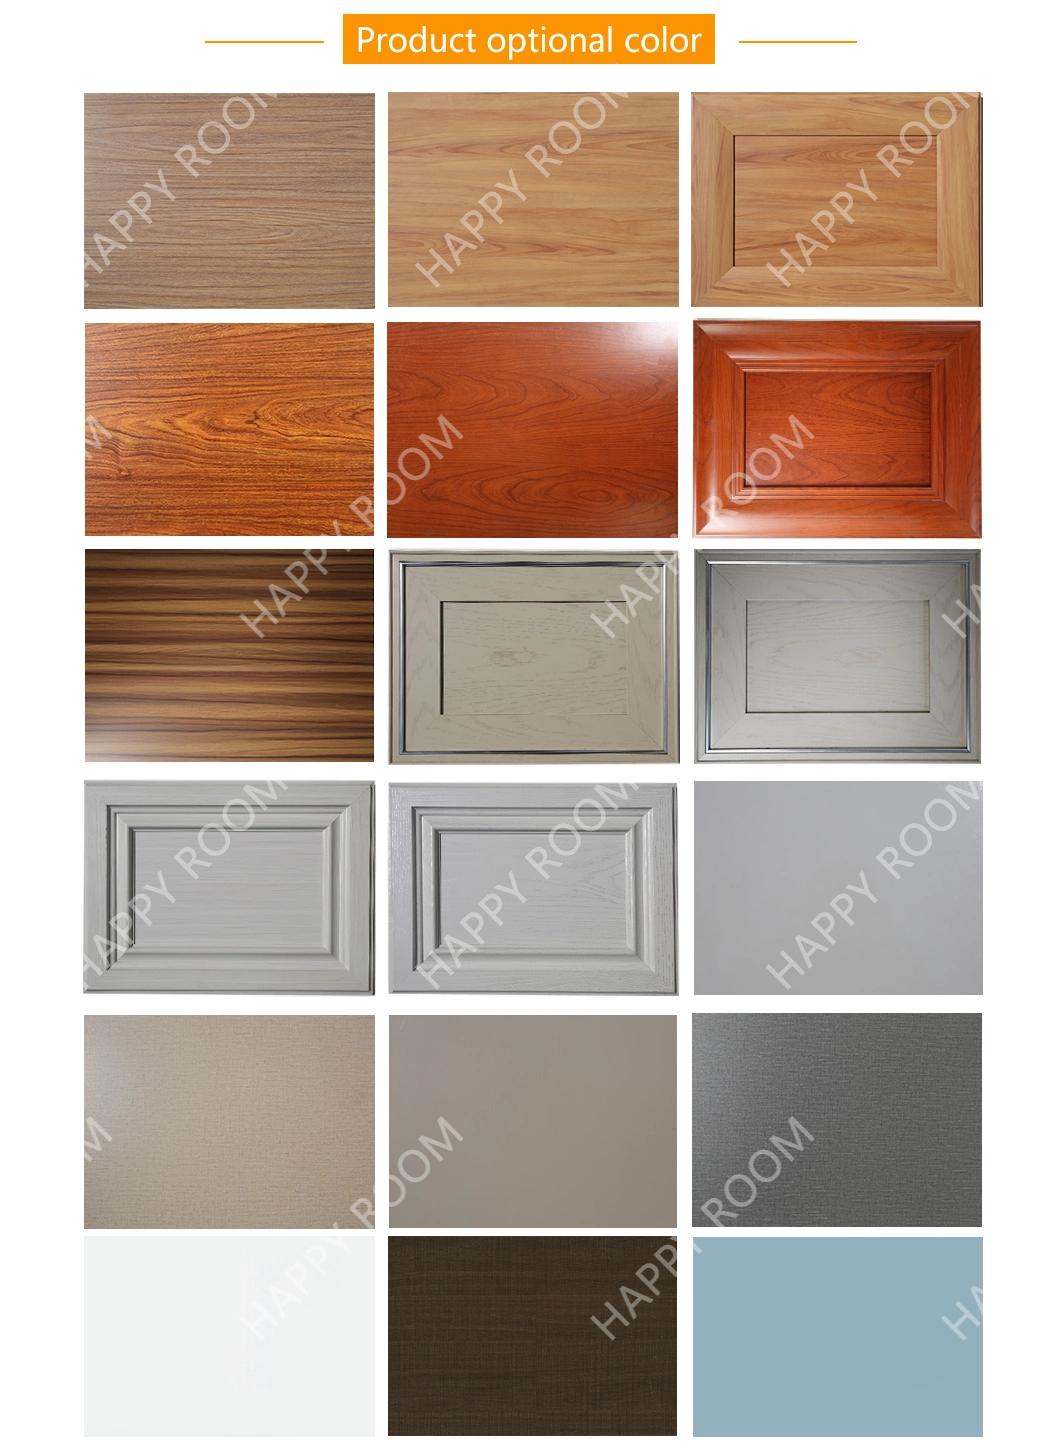 Living Room Cabinet Customized Color Aluminium Wardrobe Extrusion Manufacturer 2020 New Design Manufacturer Aluminum Furniture